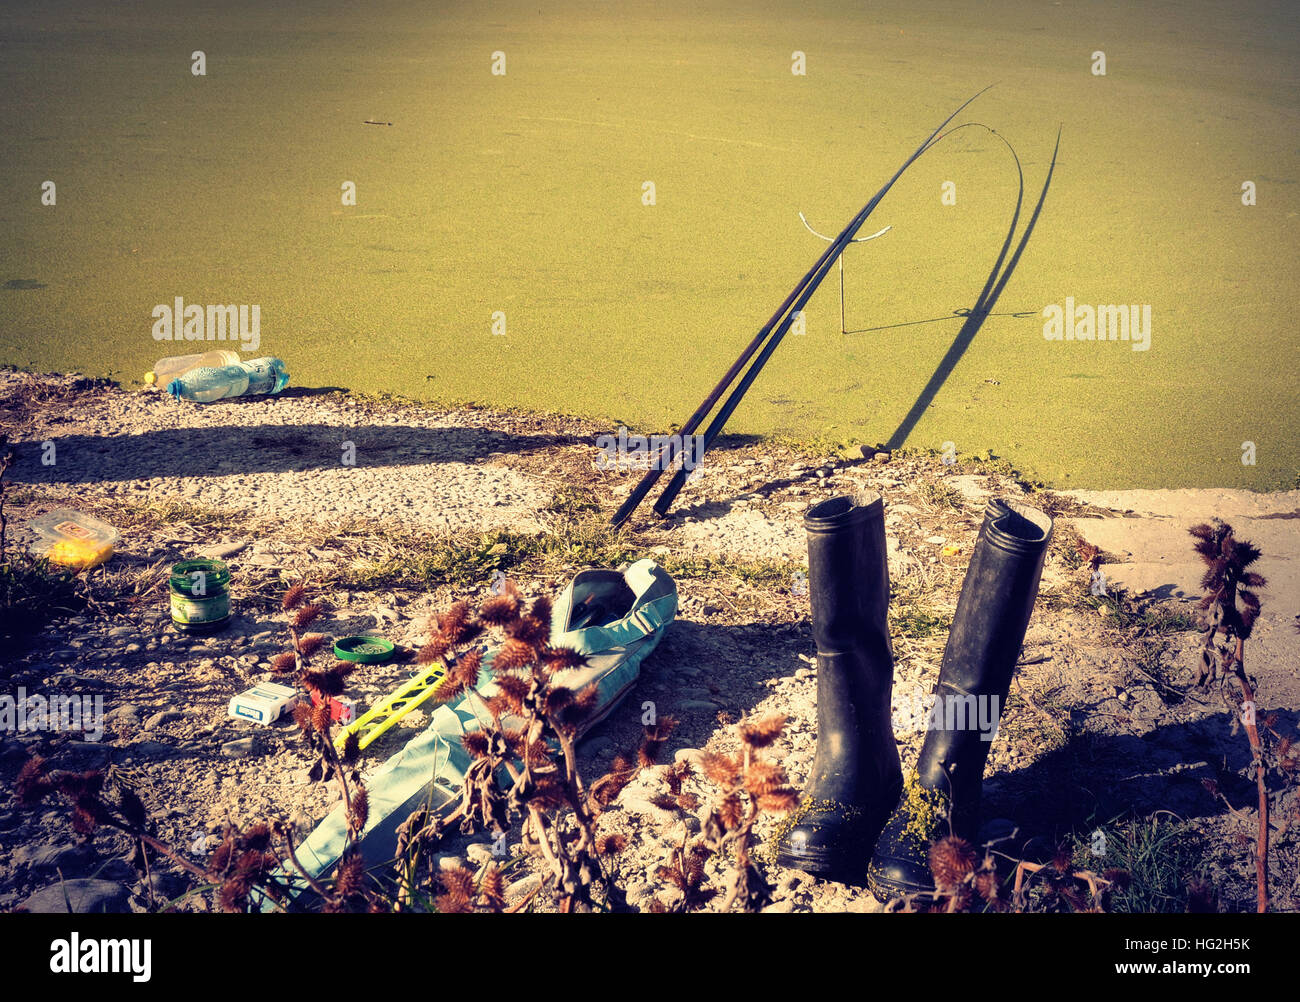 Les accessoires du pêcheur sont sur la rive d'un lac couverts de mousse, mais le pêcheur lui-même est manquante. Banque D'Images